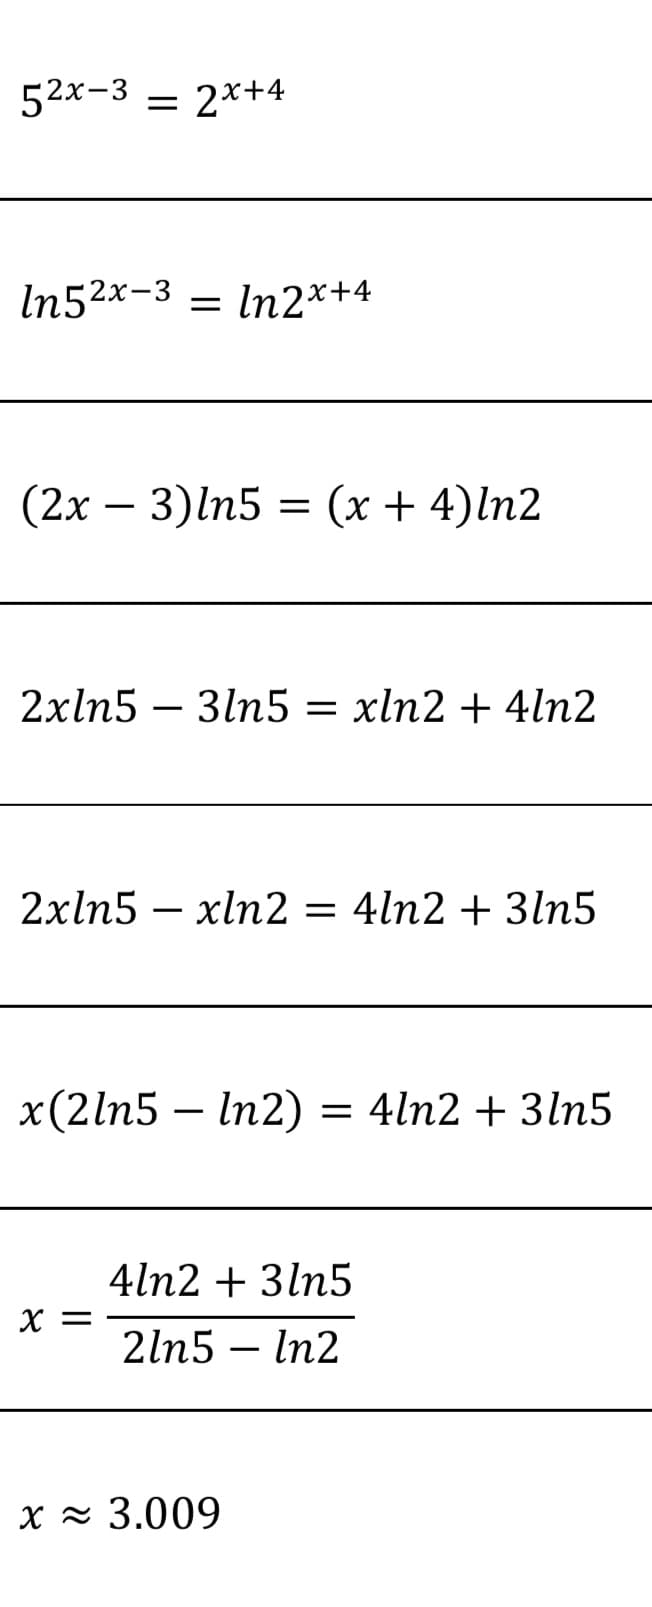 52x-3 = 2*+4
In52x-3 = In2*+4
(2х — 3)ln5 3D (х + 4)ln2
2xln5 – 3ln5 = xln2 + 4ln2
2xln5 – xln2 = 4ln2 + 3ln5
-
x(2ln5 – In2)
= 4ln2 + 3ln5
4ln2 + 3ln5
X =
2ln5 – In2
|
X z 3.009
